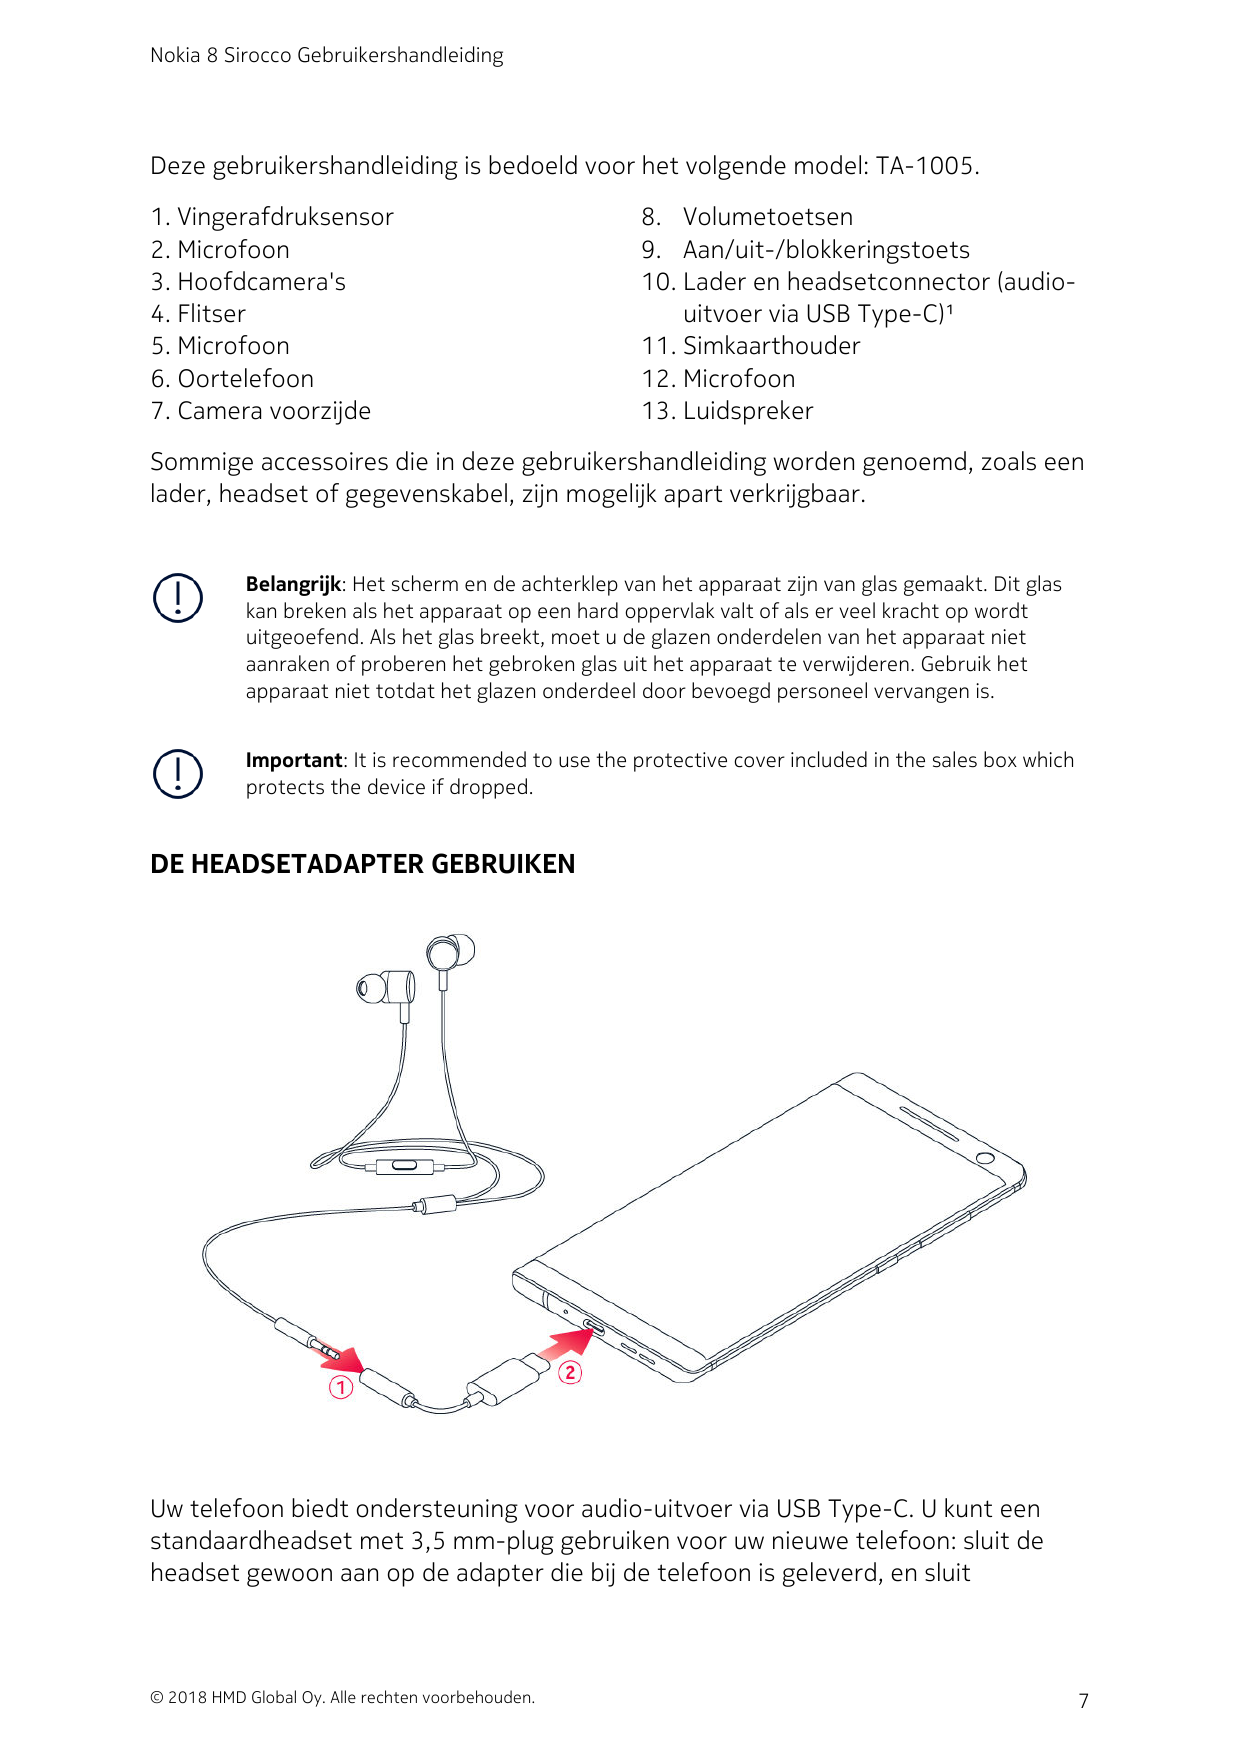 Nokia 8 Sirocco GebruikershandleidingDeze gebruikershandleiding is bedoeld voor het volgende model: TA-1005.1. Vingerafdruksenso